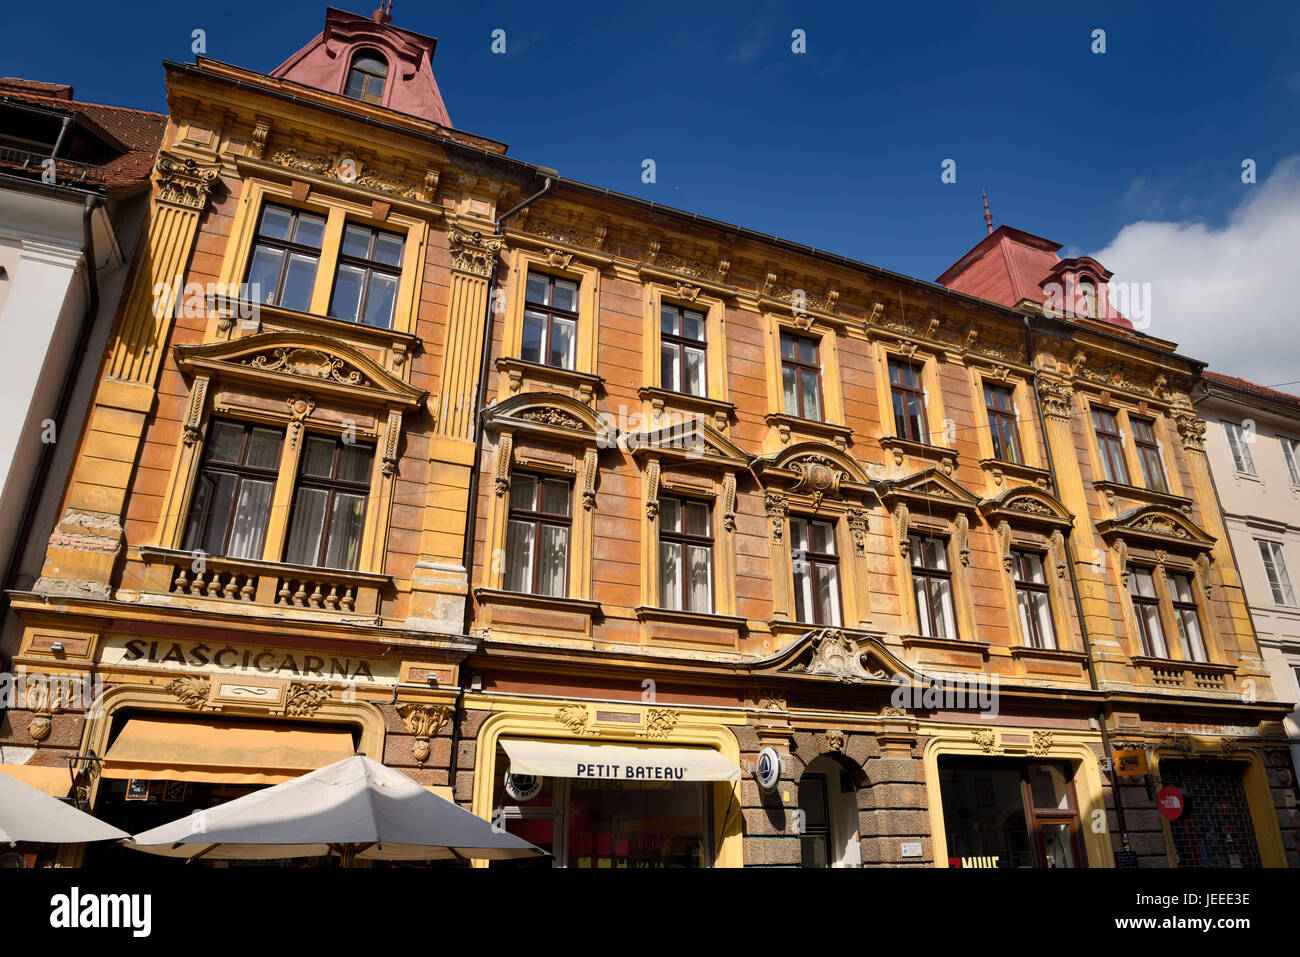 De couleur or bâtiment historique construit 1898 sur place vieille Stari Trg avec boutiques rue Ljubljana Slovénie avec ciel bleu Banque D'Images